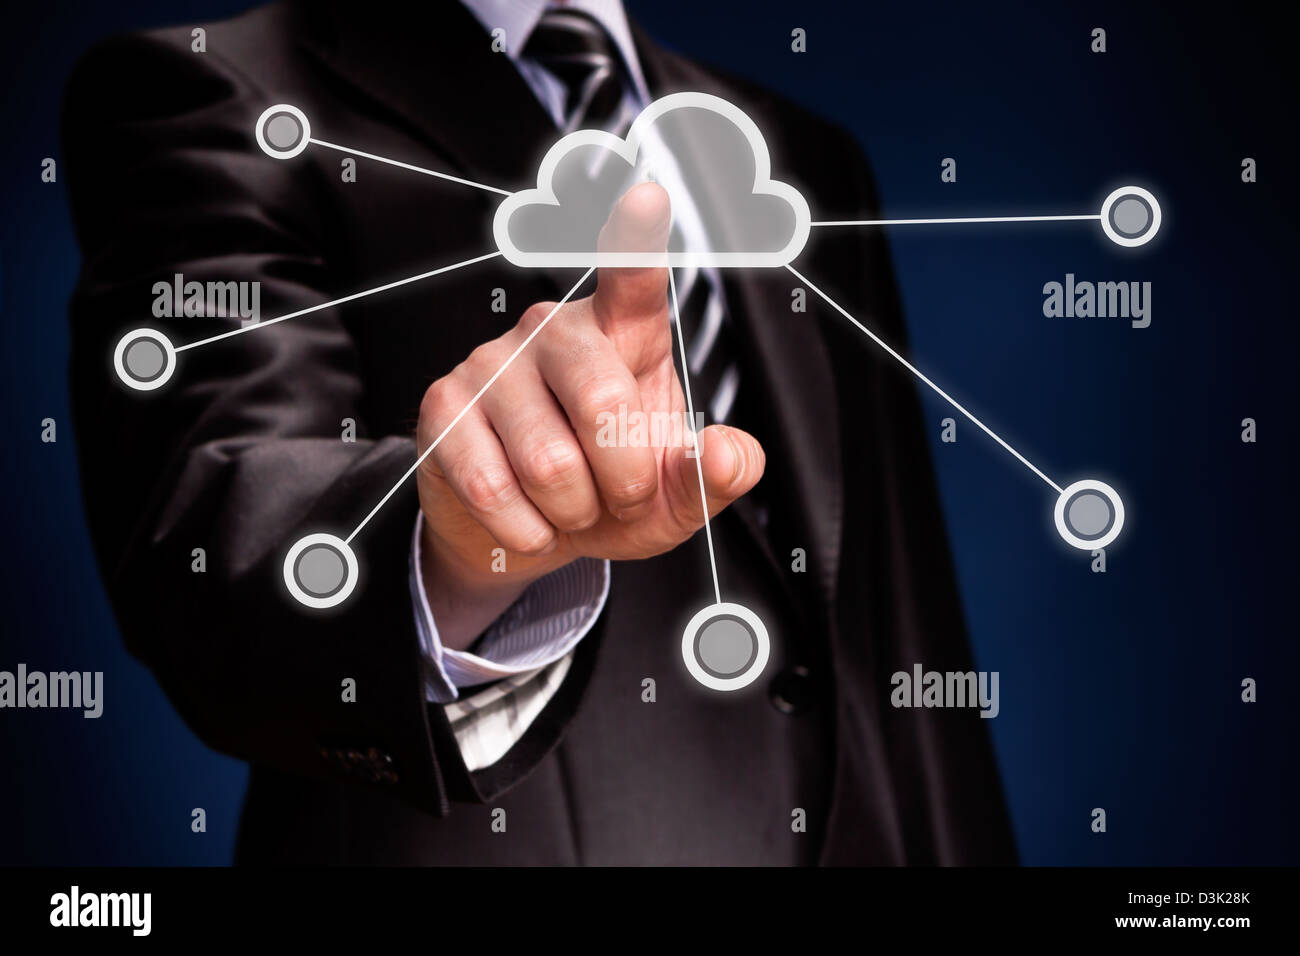 Pantalla futurista: Cloud computing interfaz táctil Foto de stock